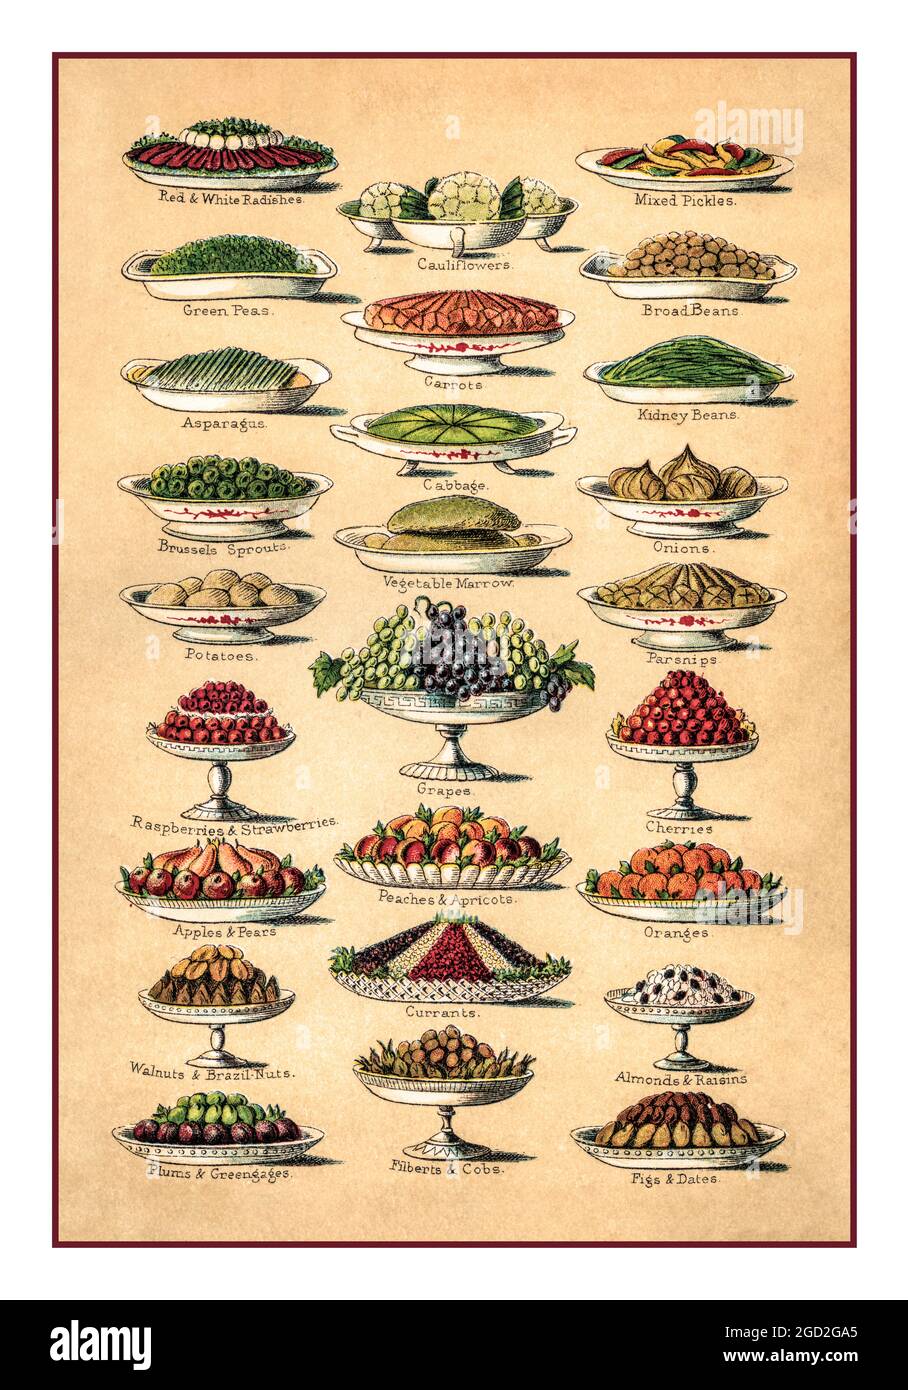 MRS BEETONS 1890 Farblithographie von Mrs Beetons Cookery Book illustriert die Vielfalt exotischer viktorianischer Früchte und Gemüse Stockfoto